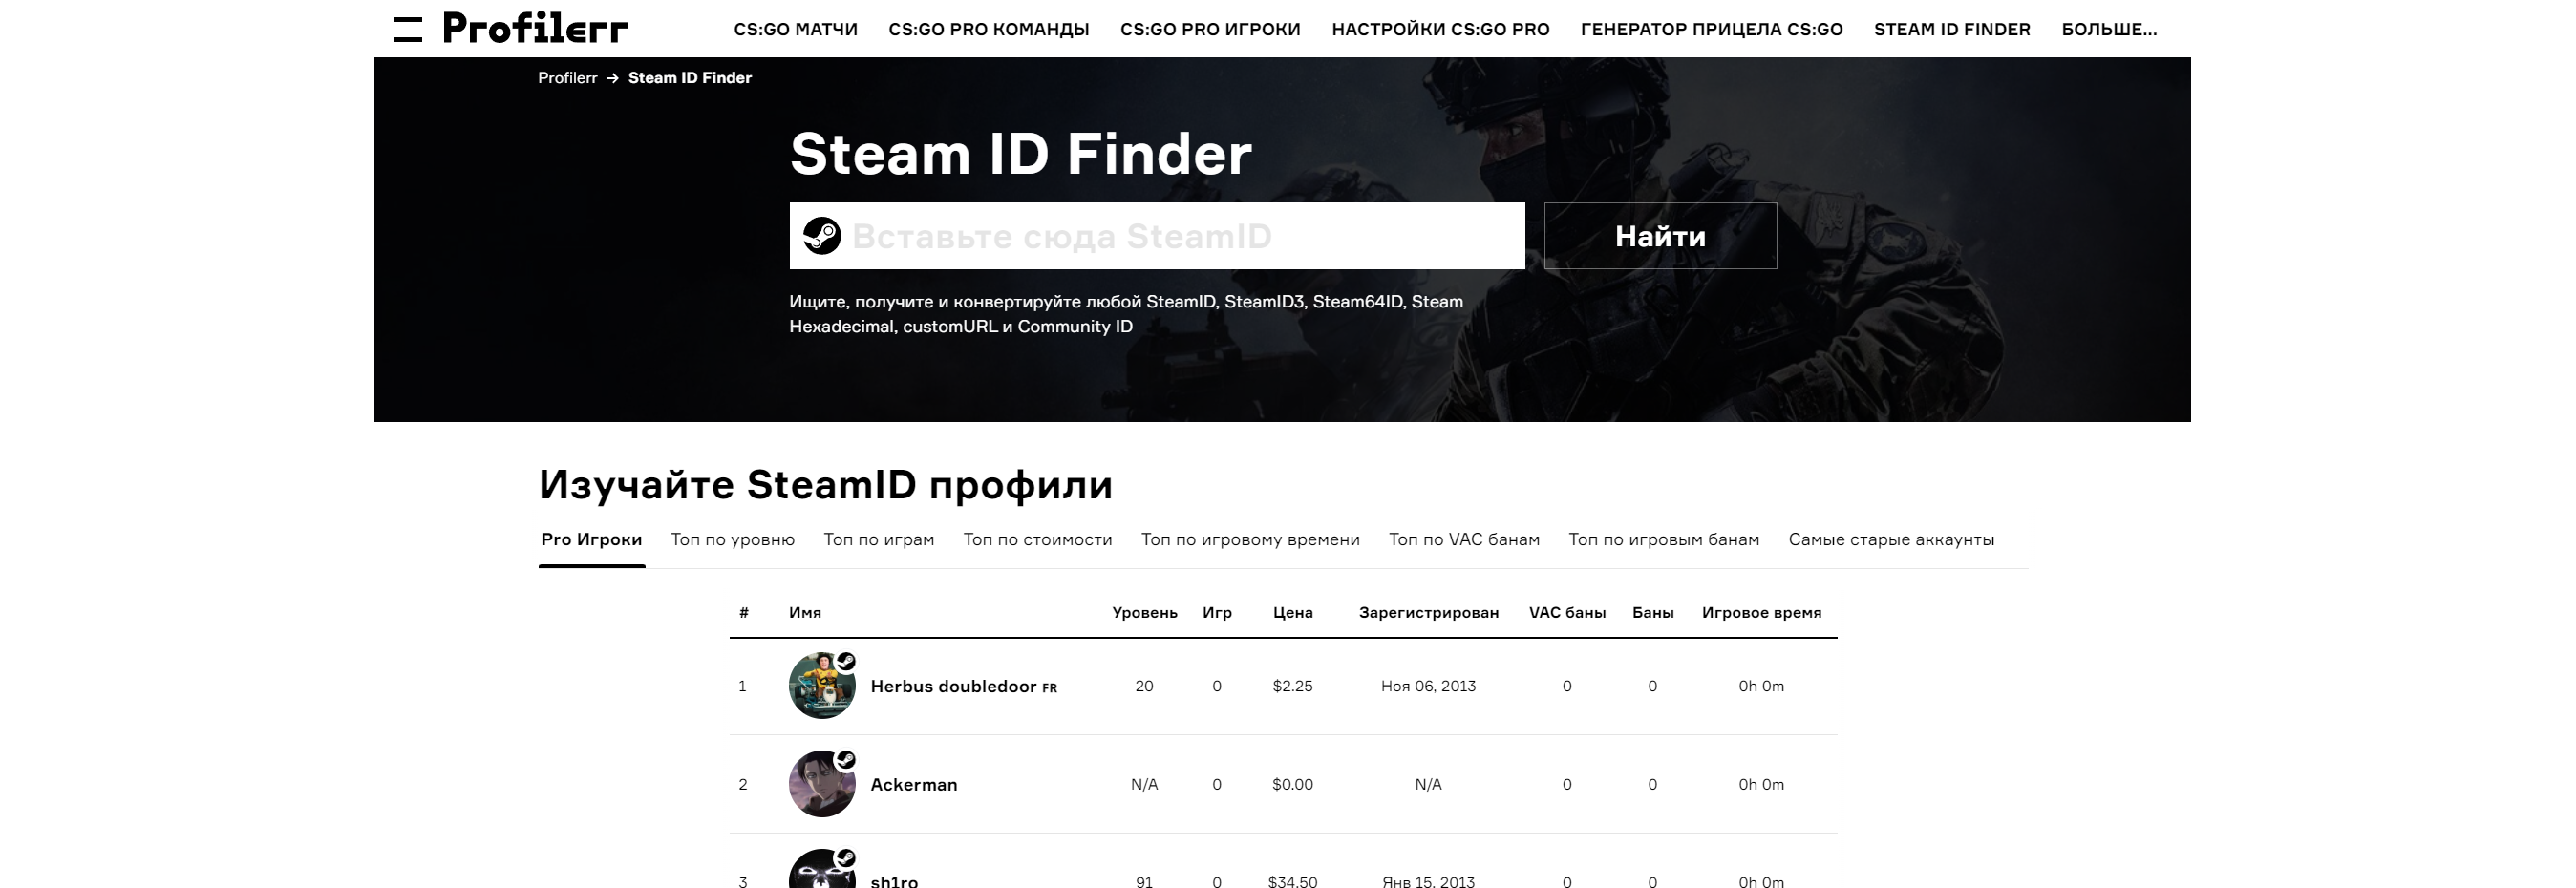 Steam ID: Быстрый Поиск и Анализ Профилей Игроков